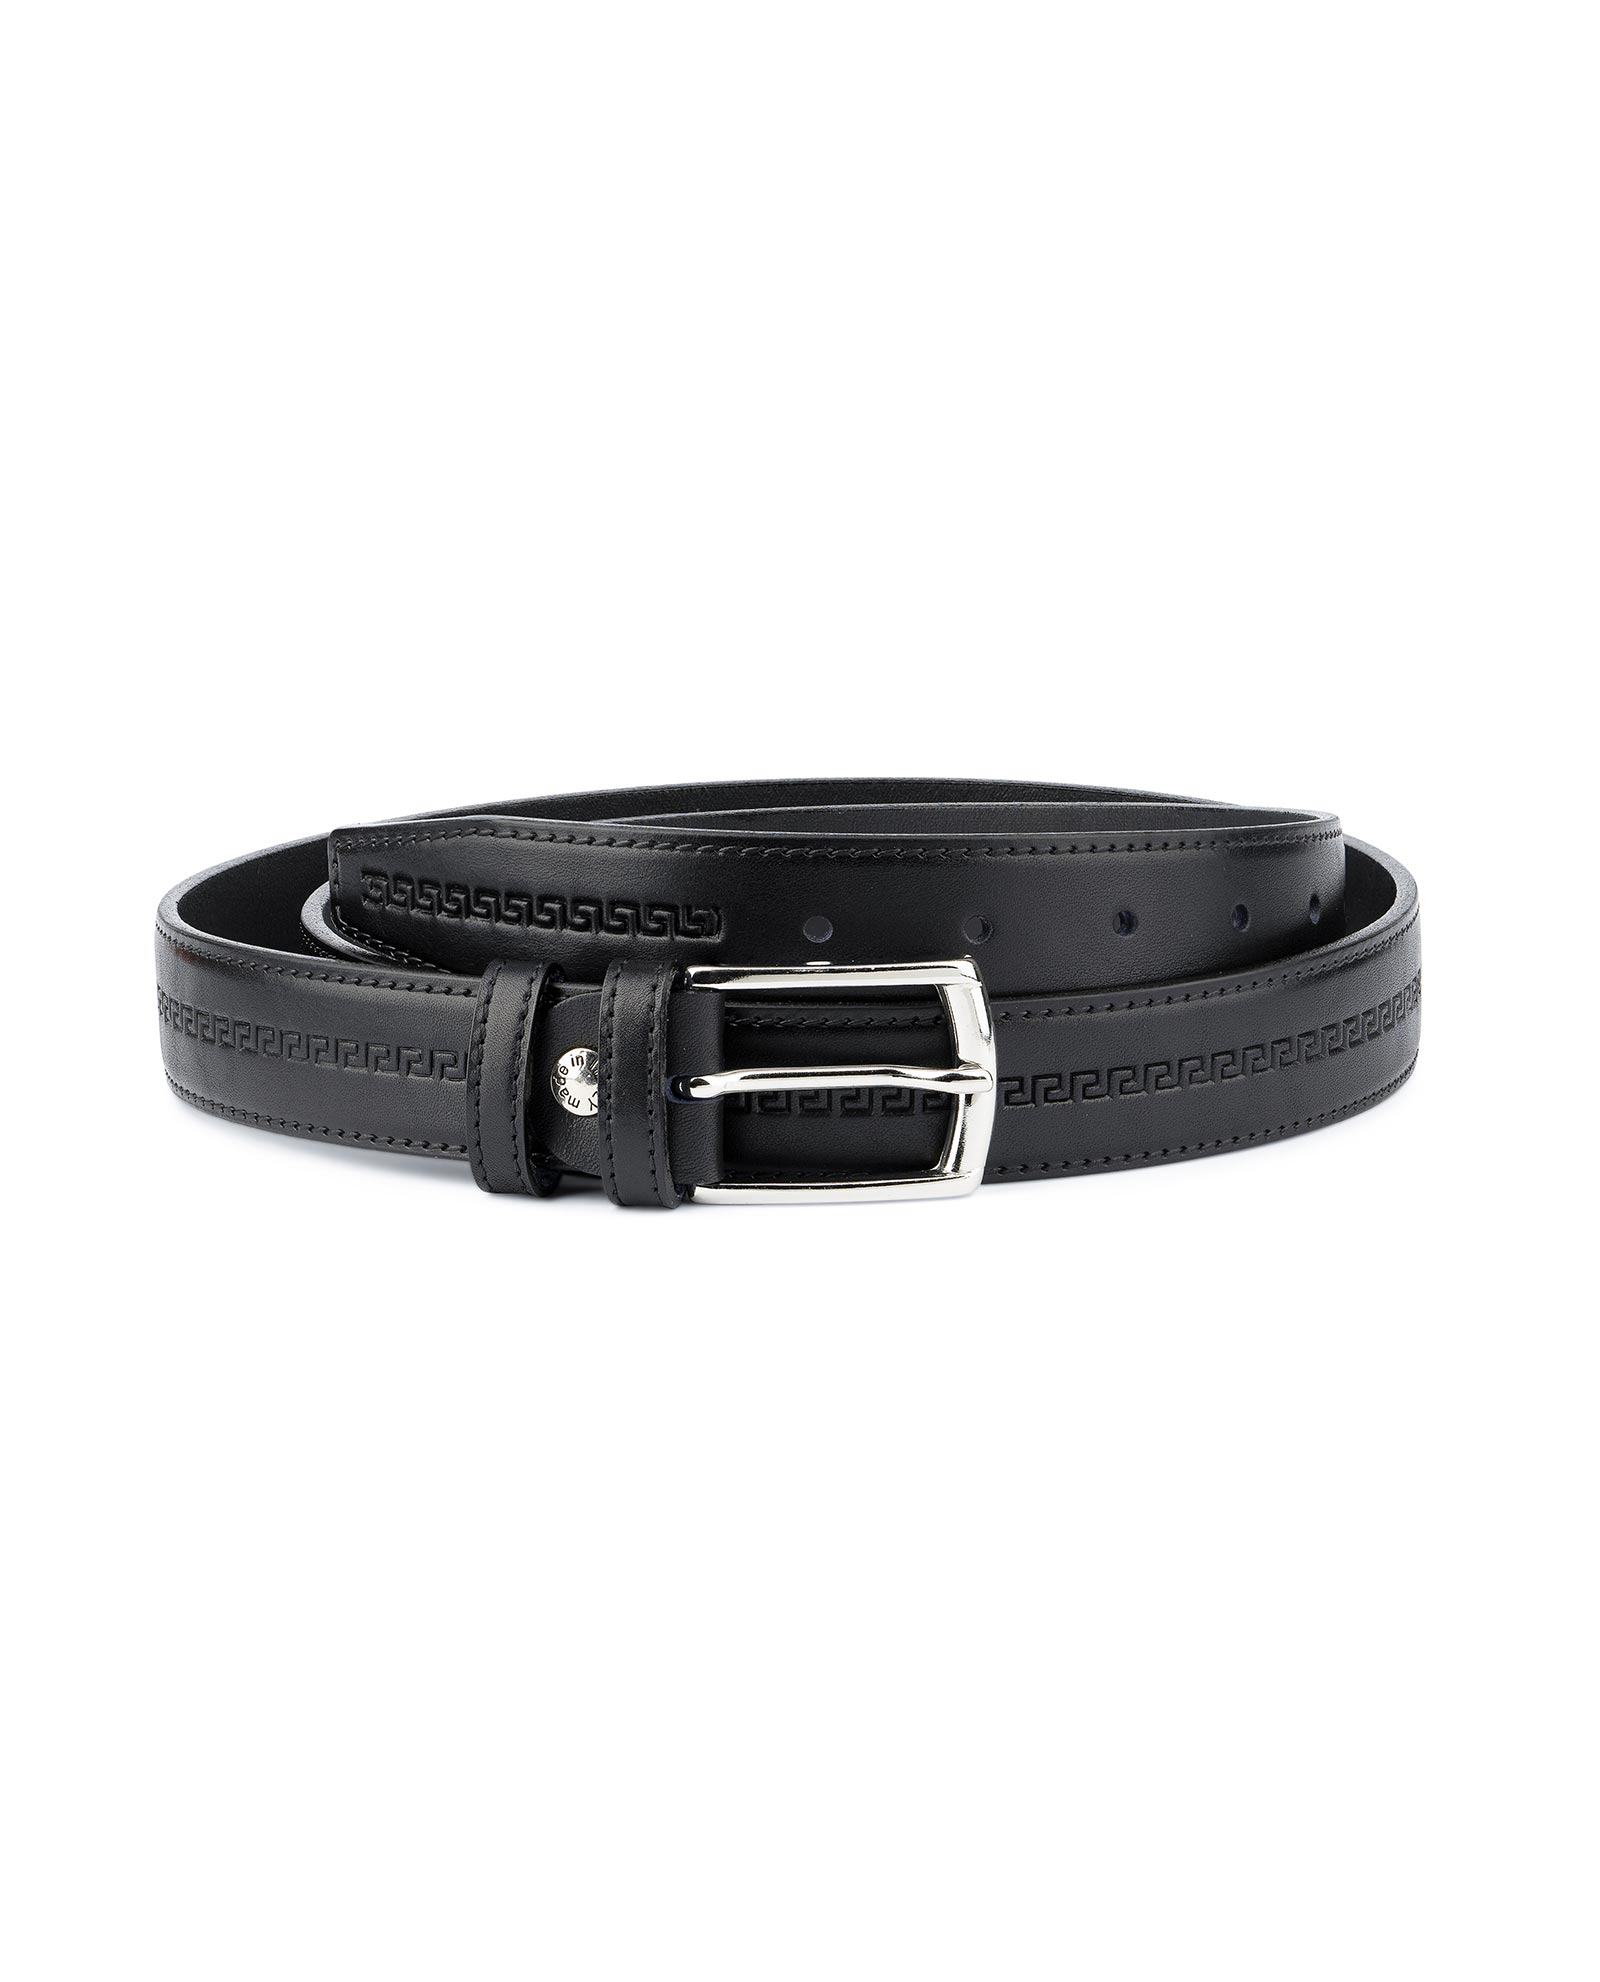 Buy Mens Leather Belt | Black Full Grain | LeatherBeltsOnline.com